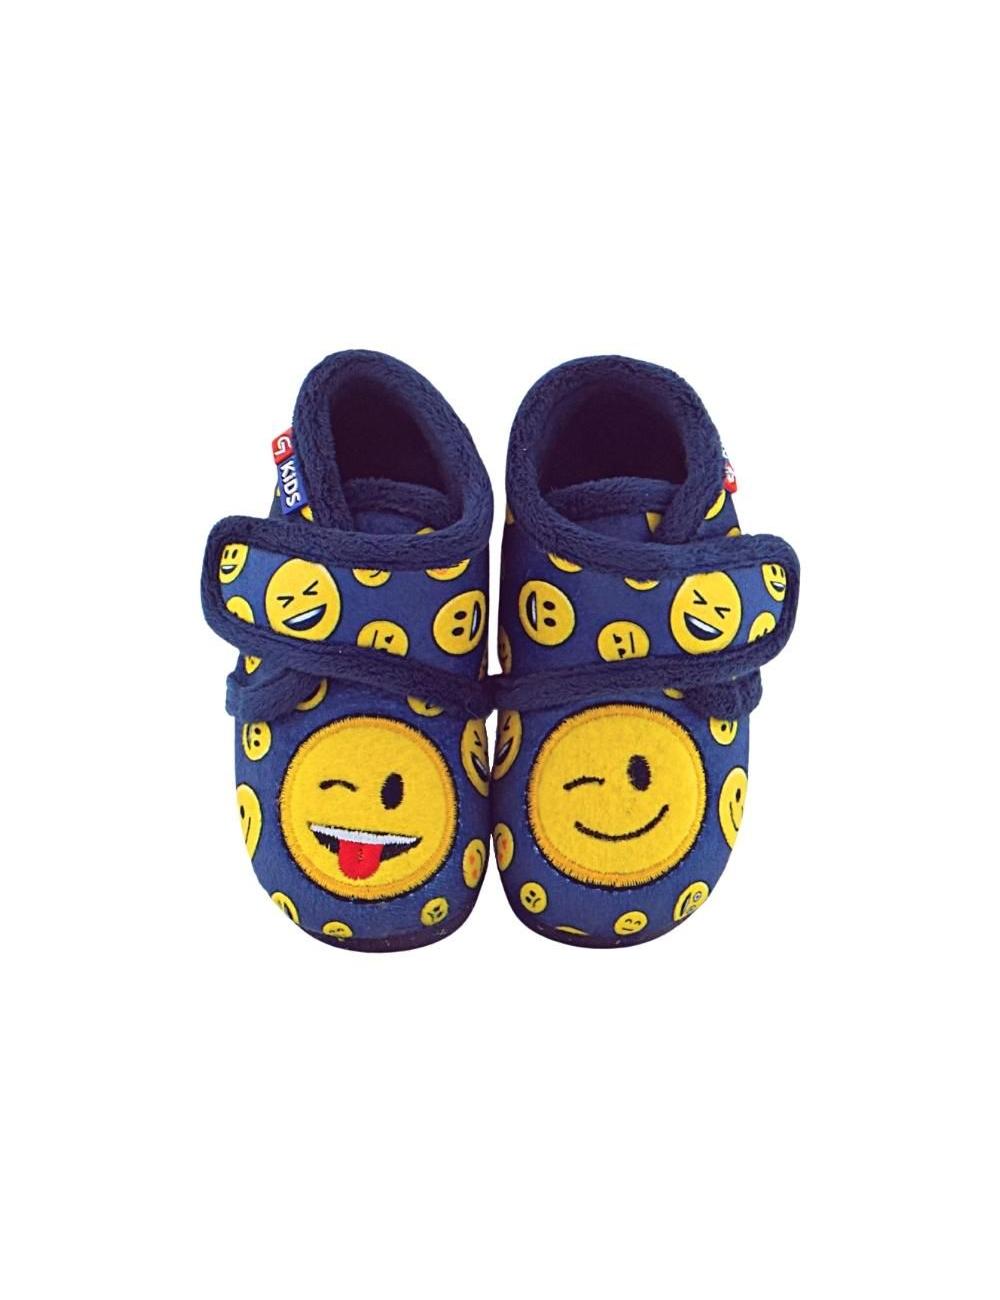 Zapatillas Niño Velcro y Emojis